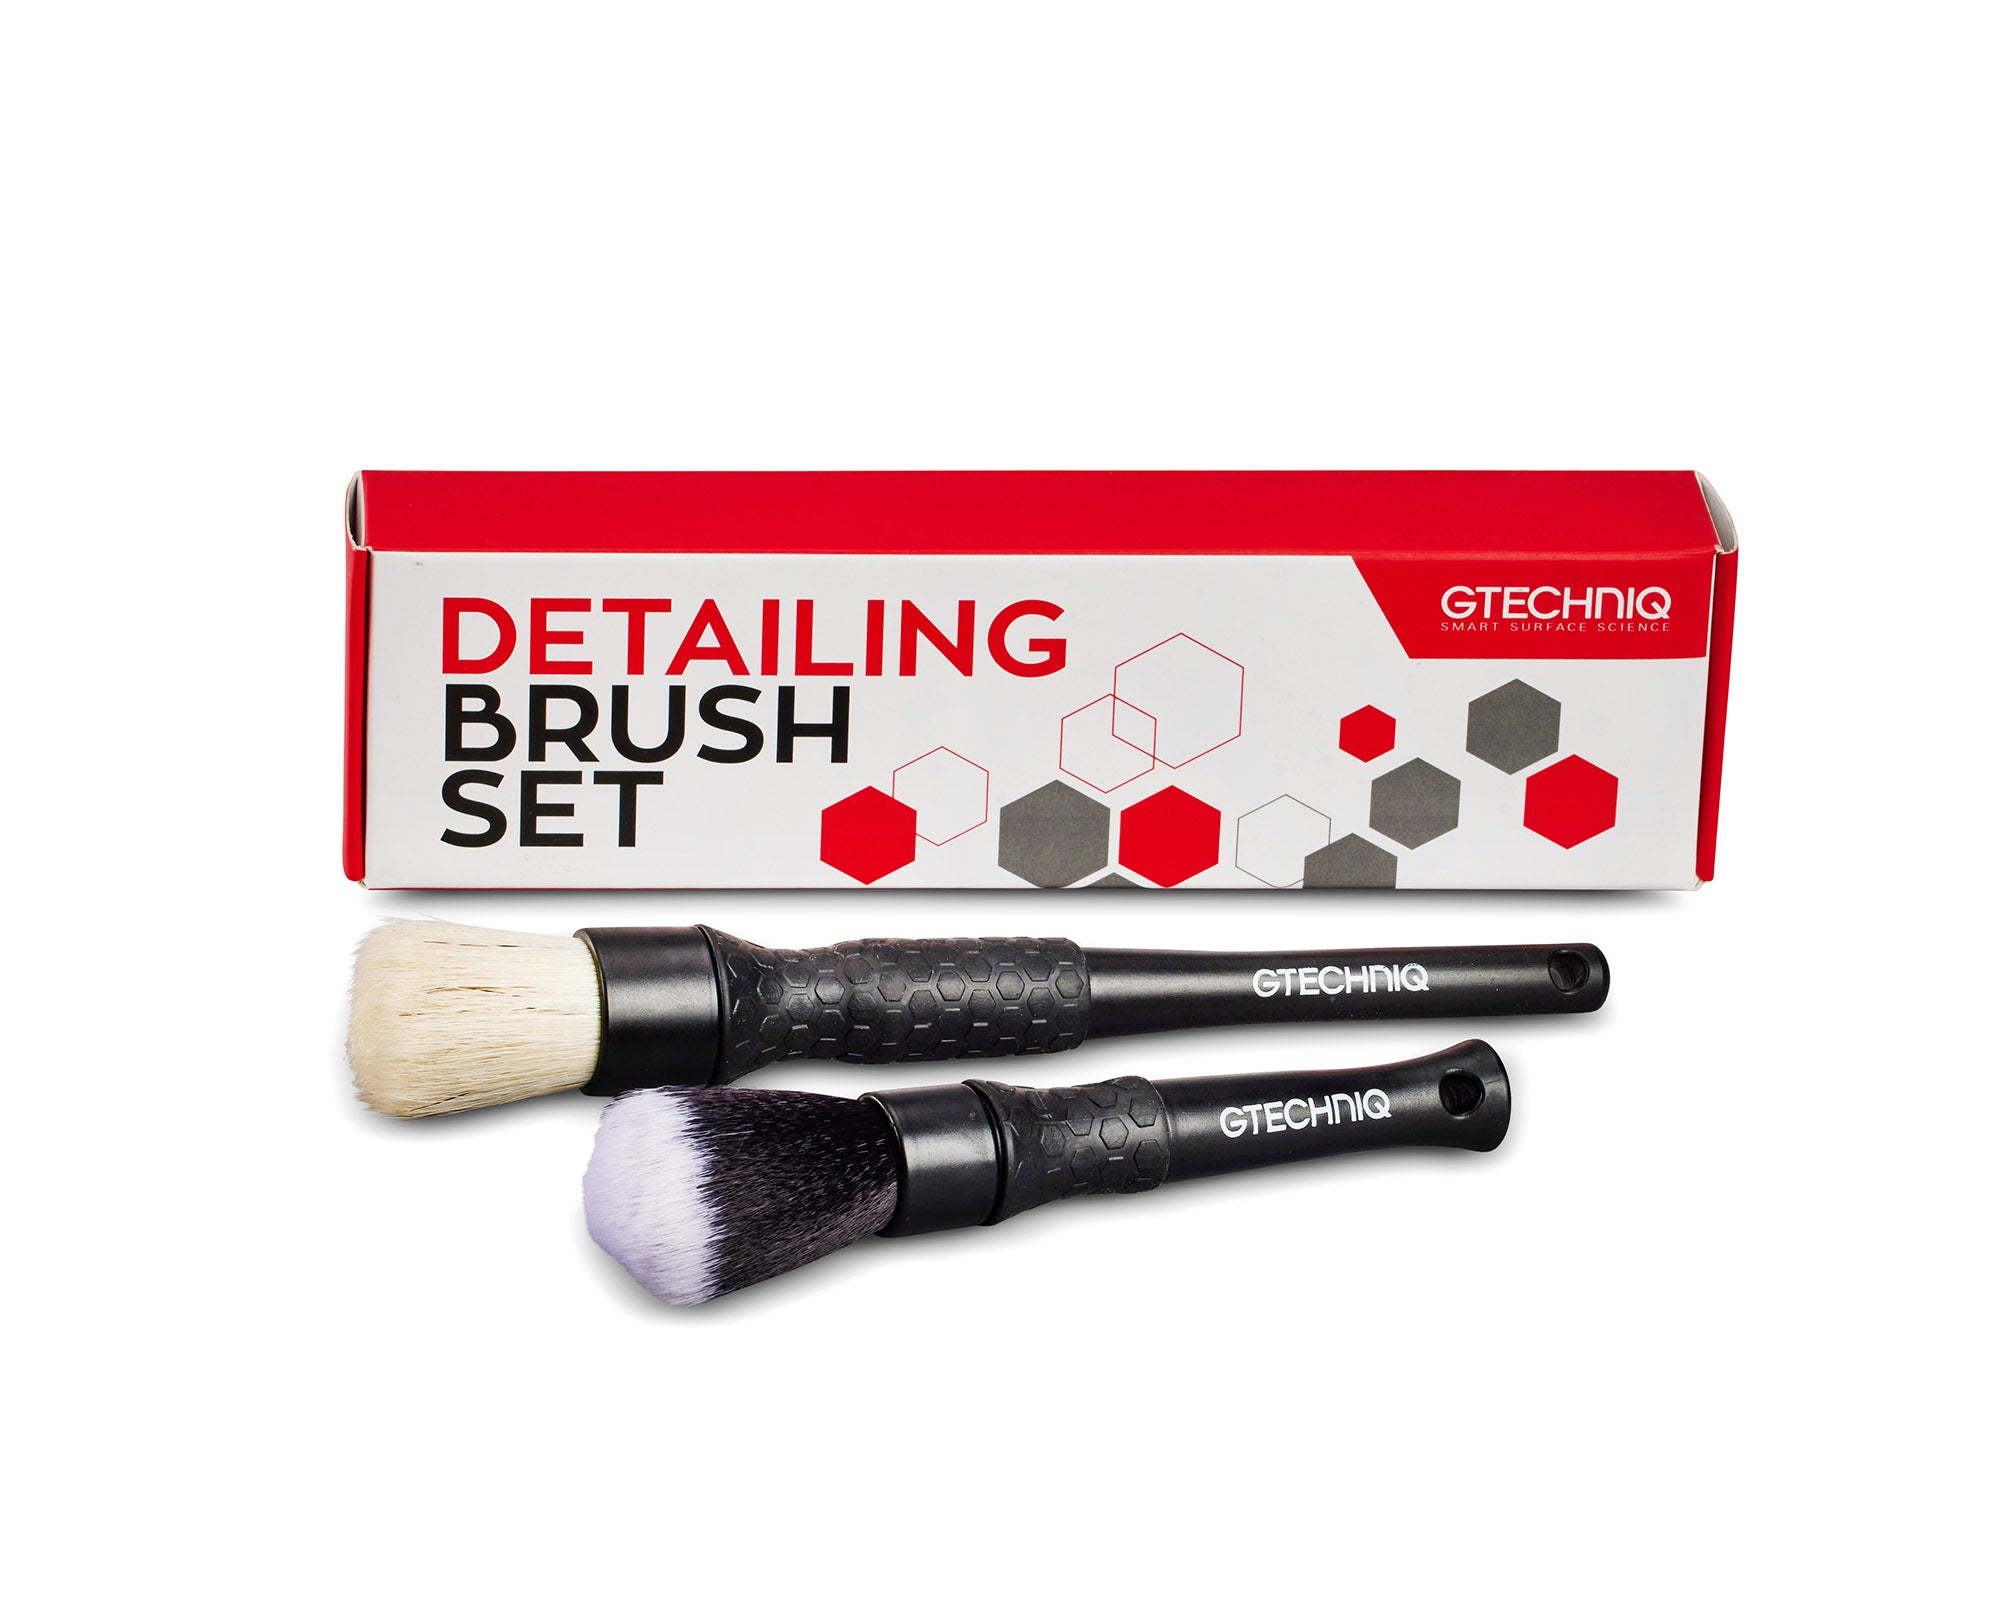 Gtechniq Detailing Brush Set (2 Pack)